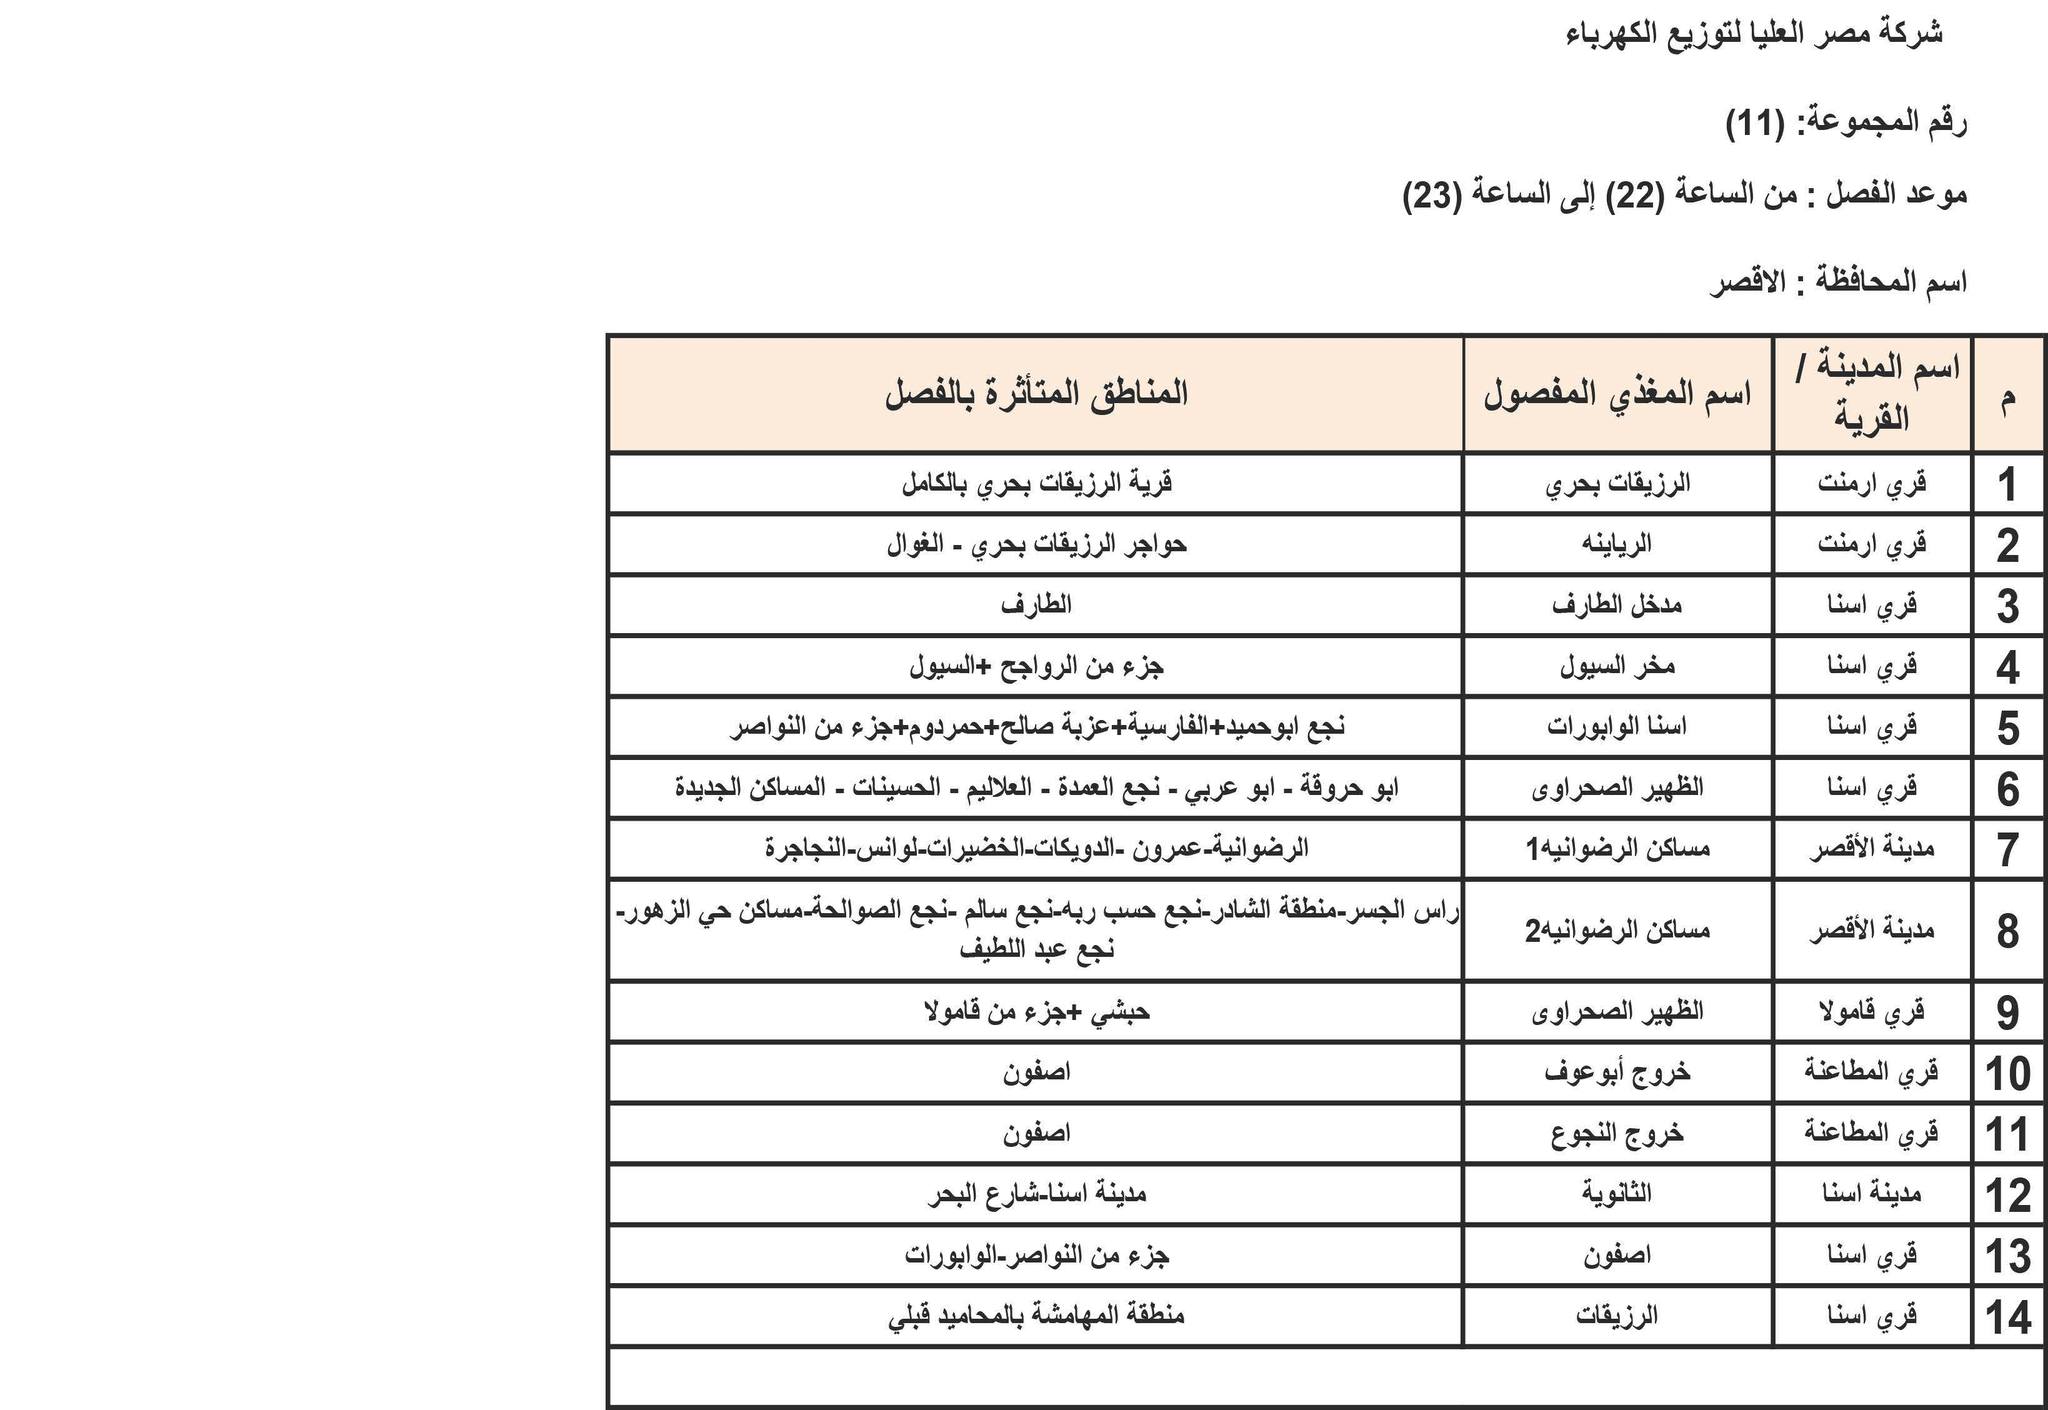 الإعلان عن خطة تخفيف أحمال الكهرباء في محافظة الأقصر 3